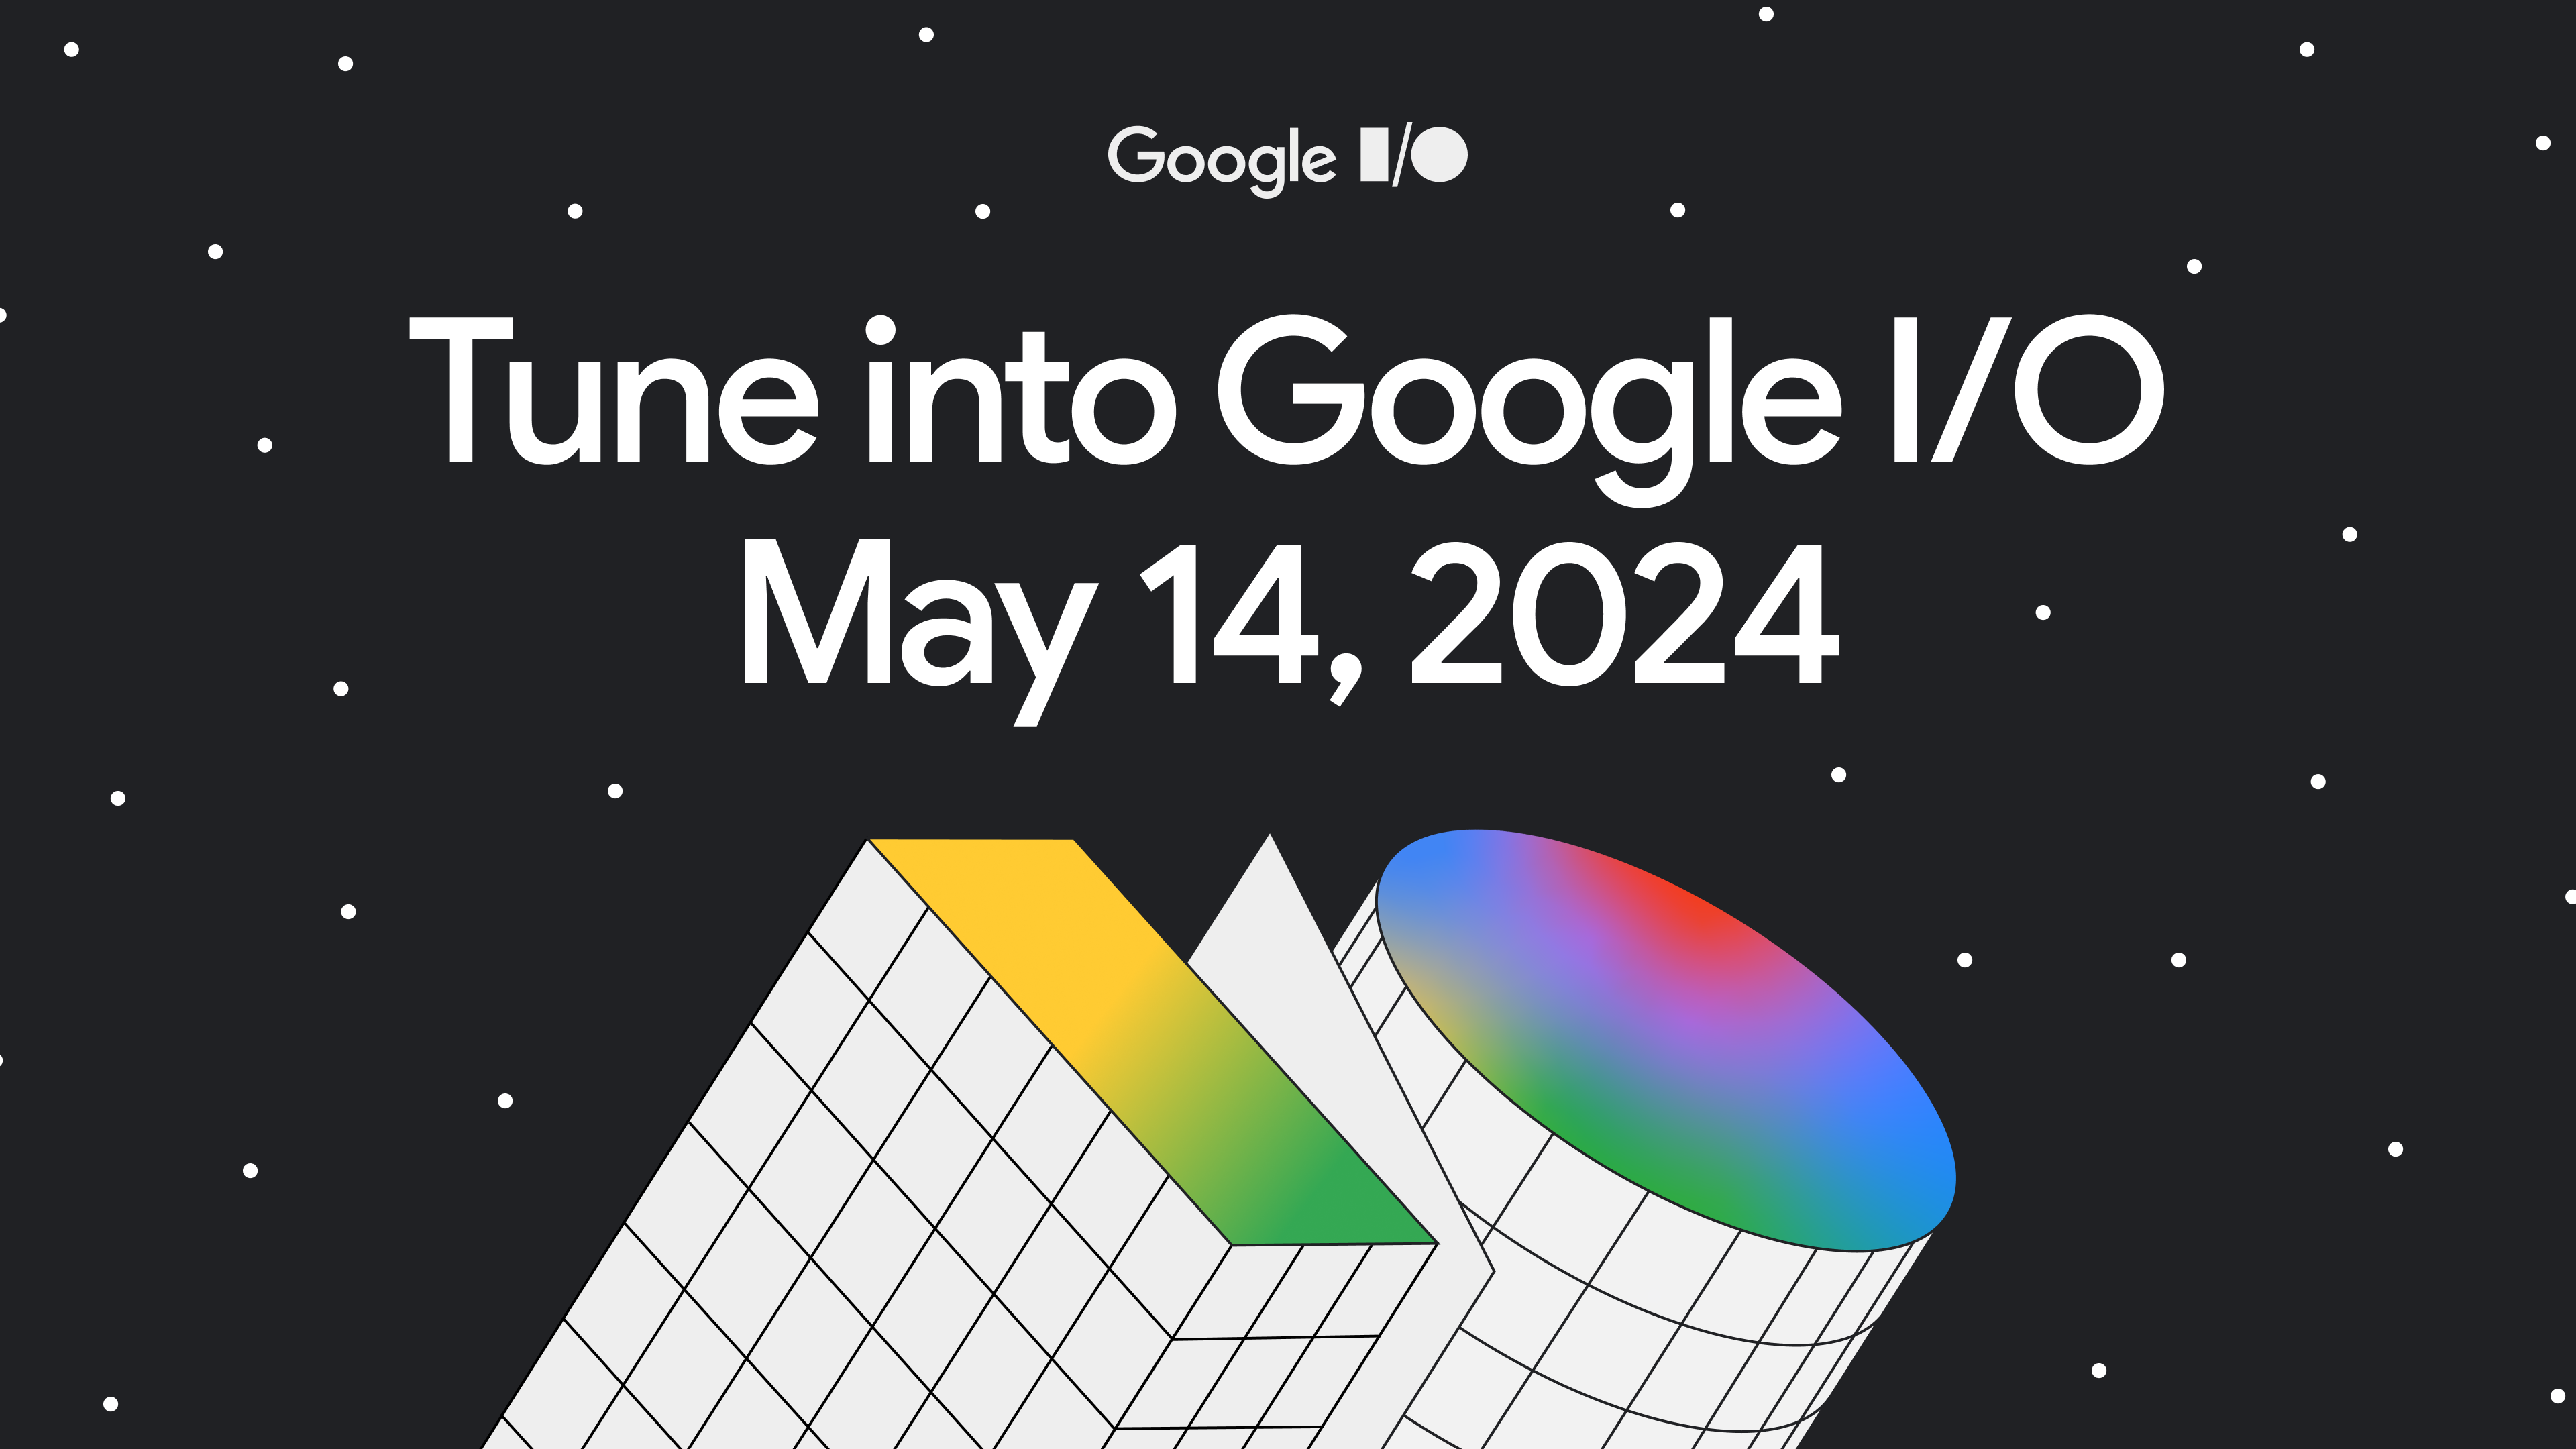 জ্যামিতিক বিমূর্ত রঙিন পরিসংখ্যান সহ একটি কালো পটভূমির চিত্র। ব্যানারটিতে লেখা রয়েছে: 'Google I/O-এ টিউন করুন। 14 মে, 2024'